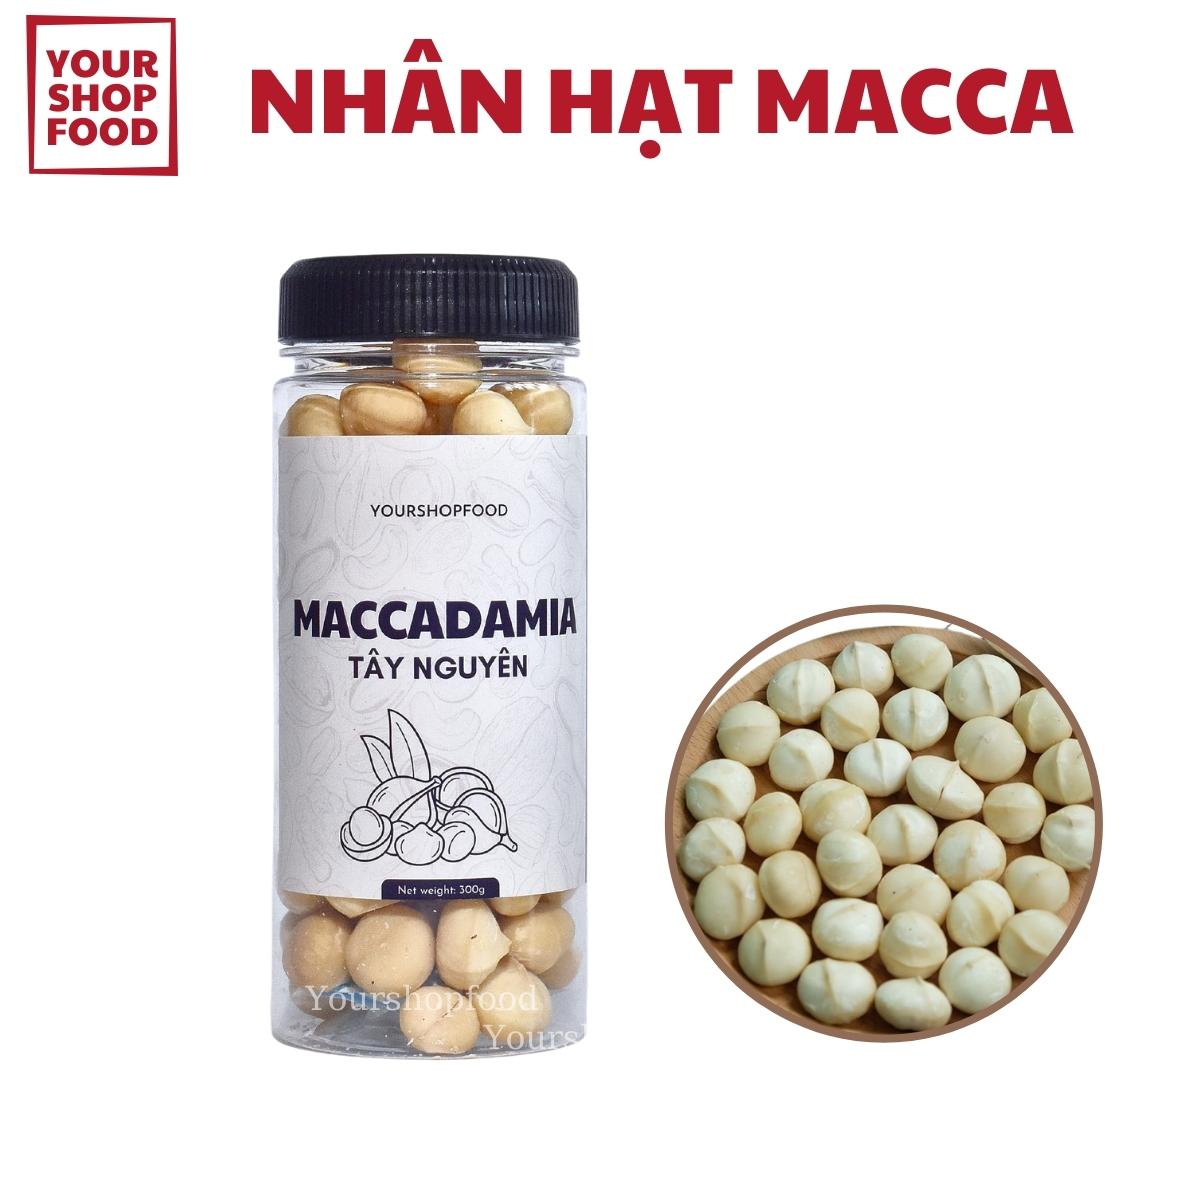 Nhân Hạt Macca Tách Vỏ YourshopFood - Hạt Mắc ca Tây Nguyên- Macadamia